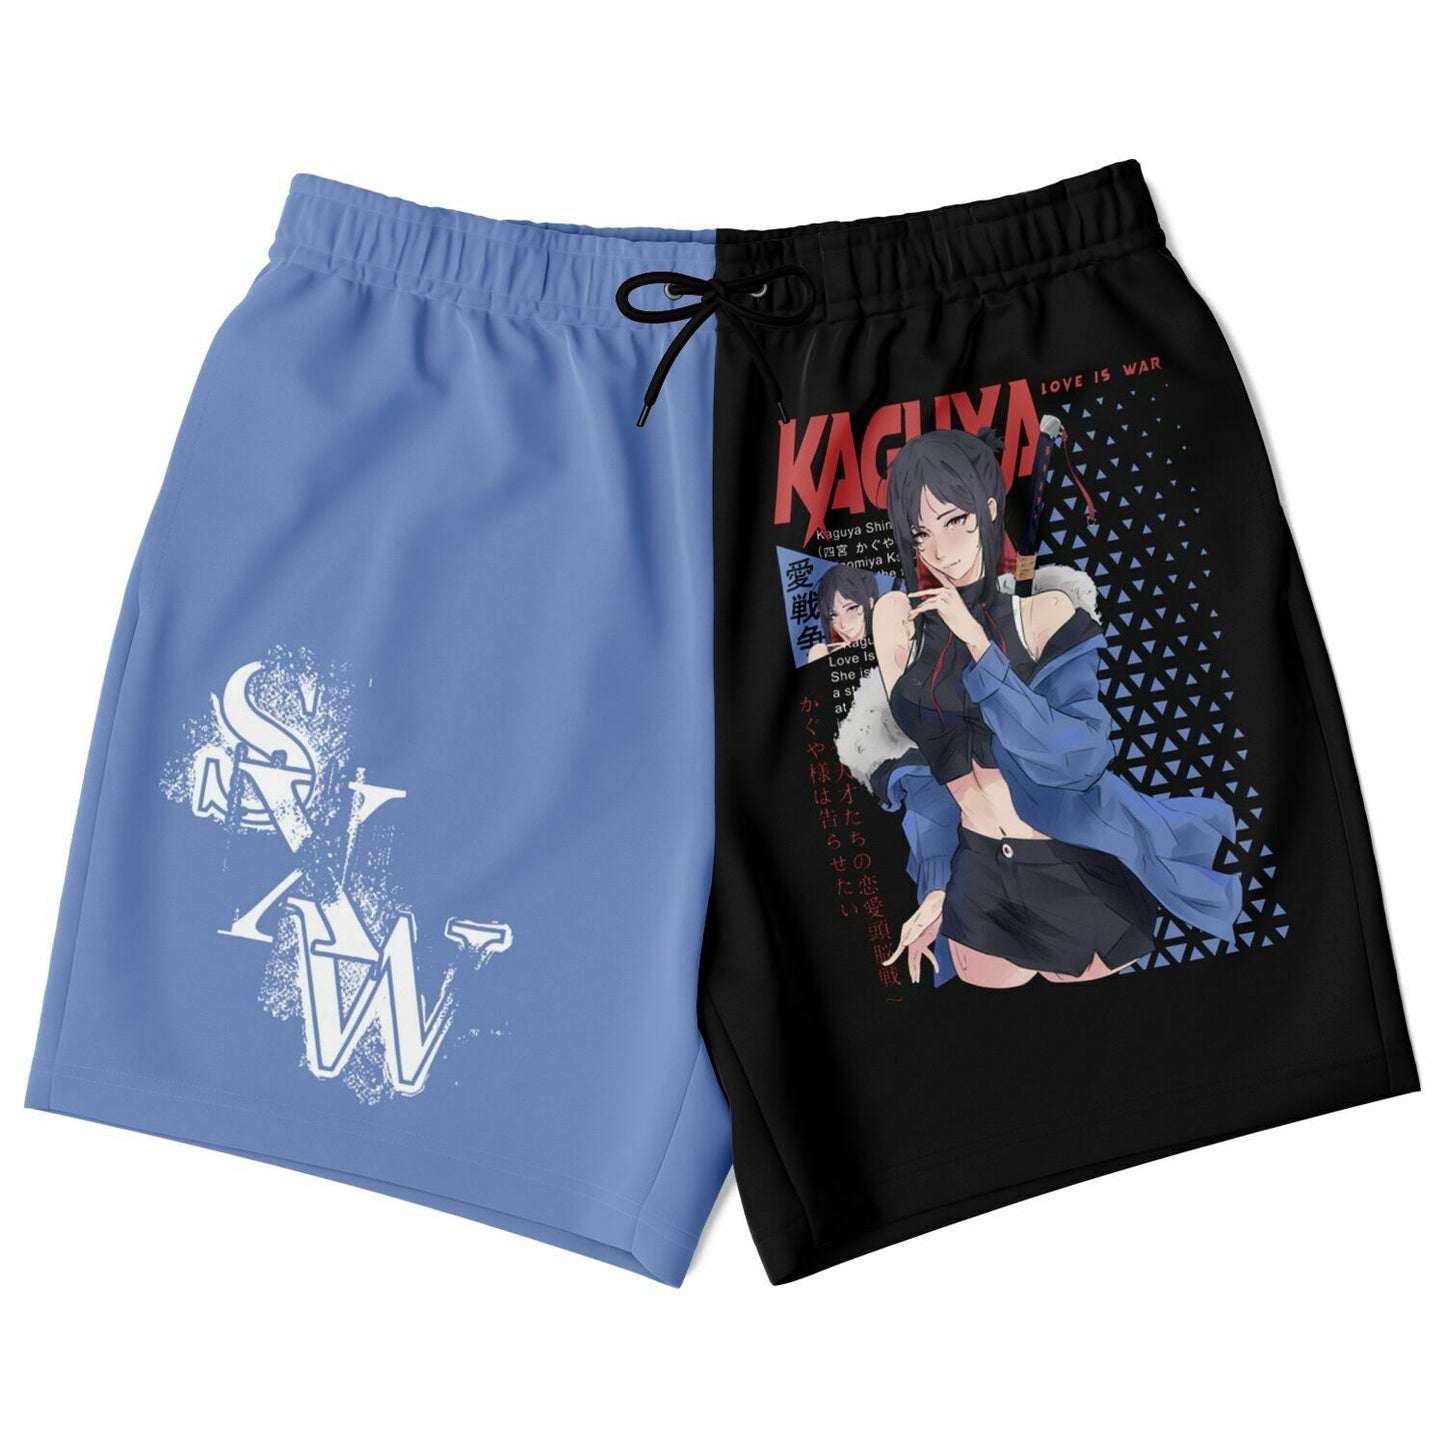 Kaguya Shorts